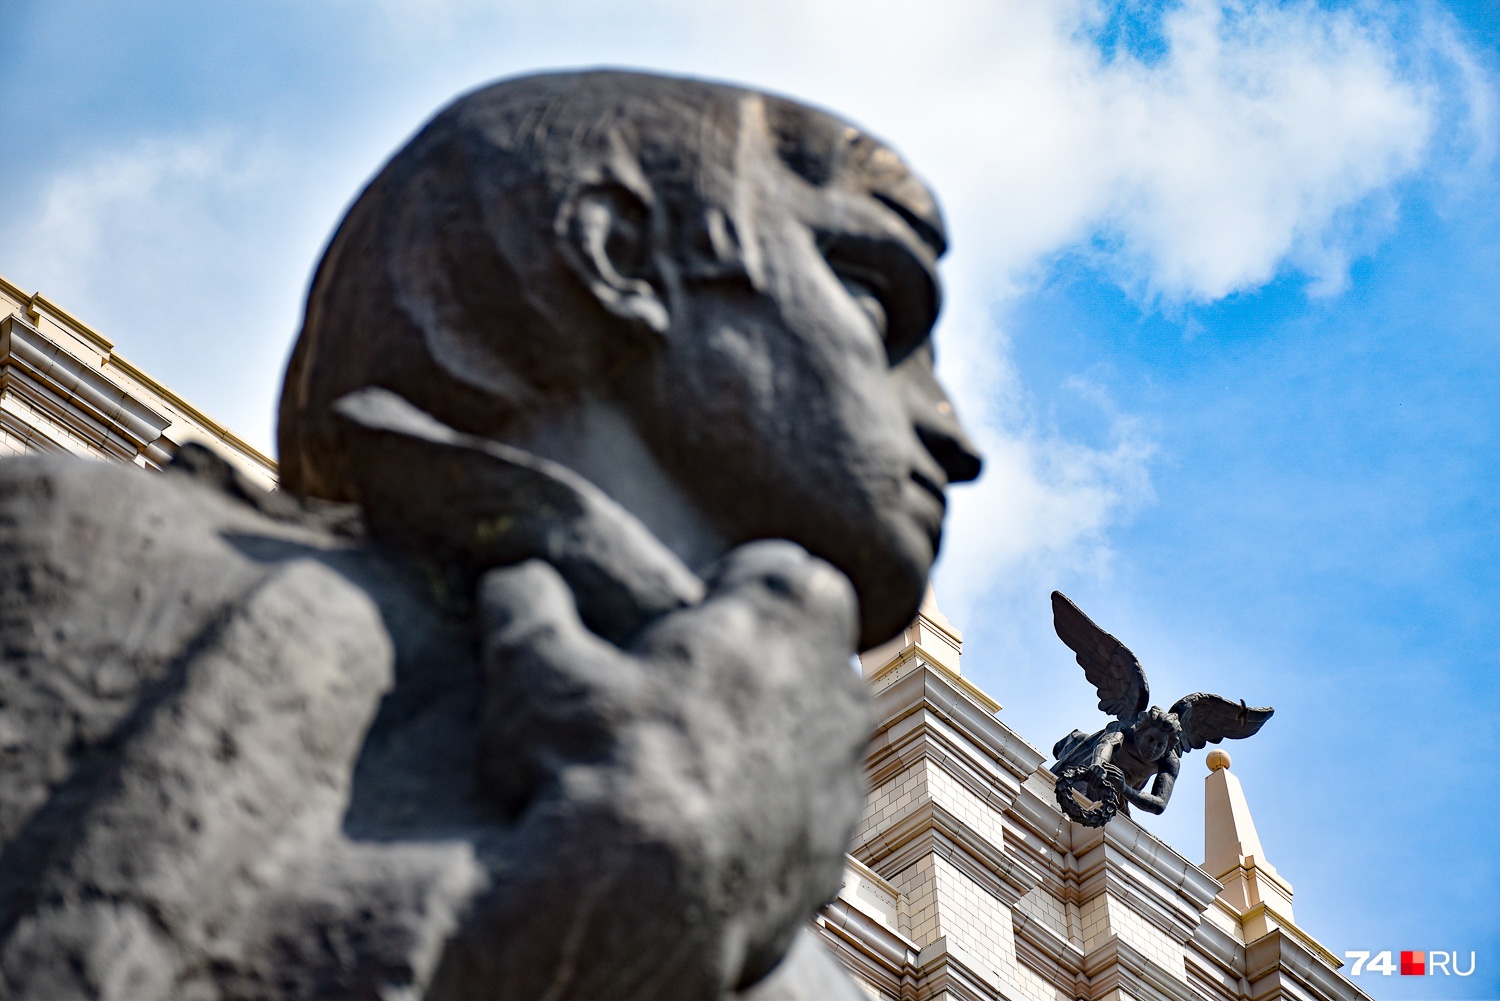 Памятник студенту, отчасти похожему на Владимира Высоцкого, и скульптура богини Ники авторства Вардкеса Авакяна